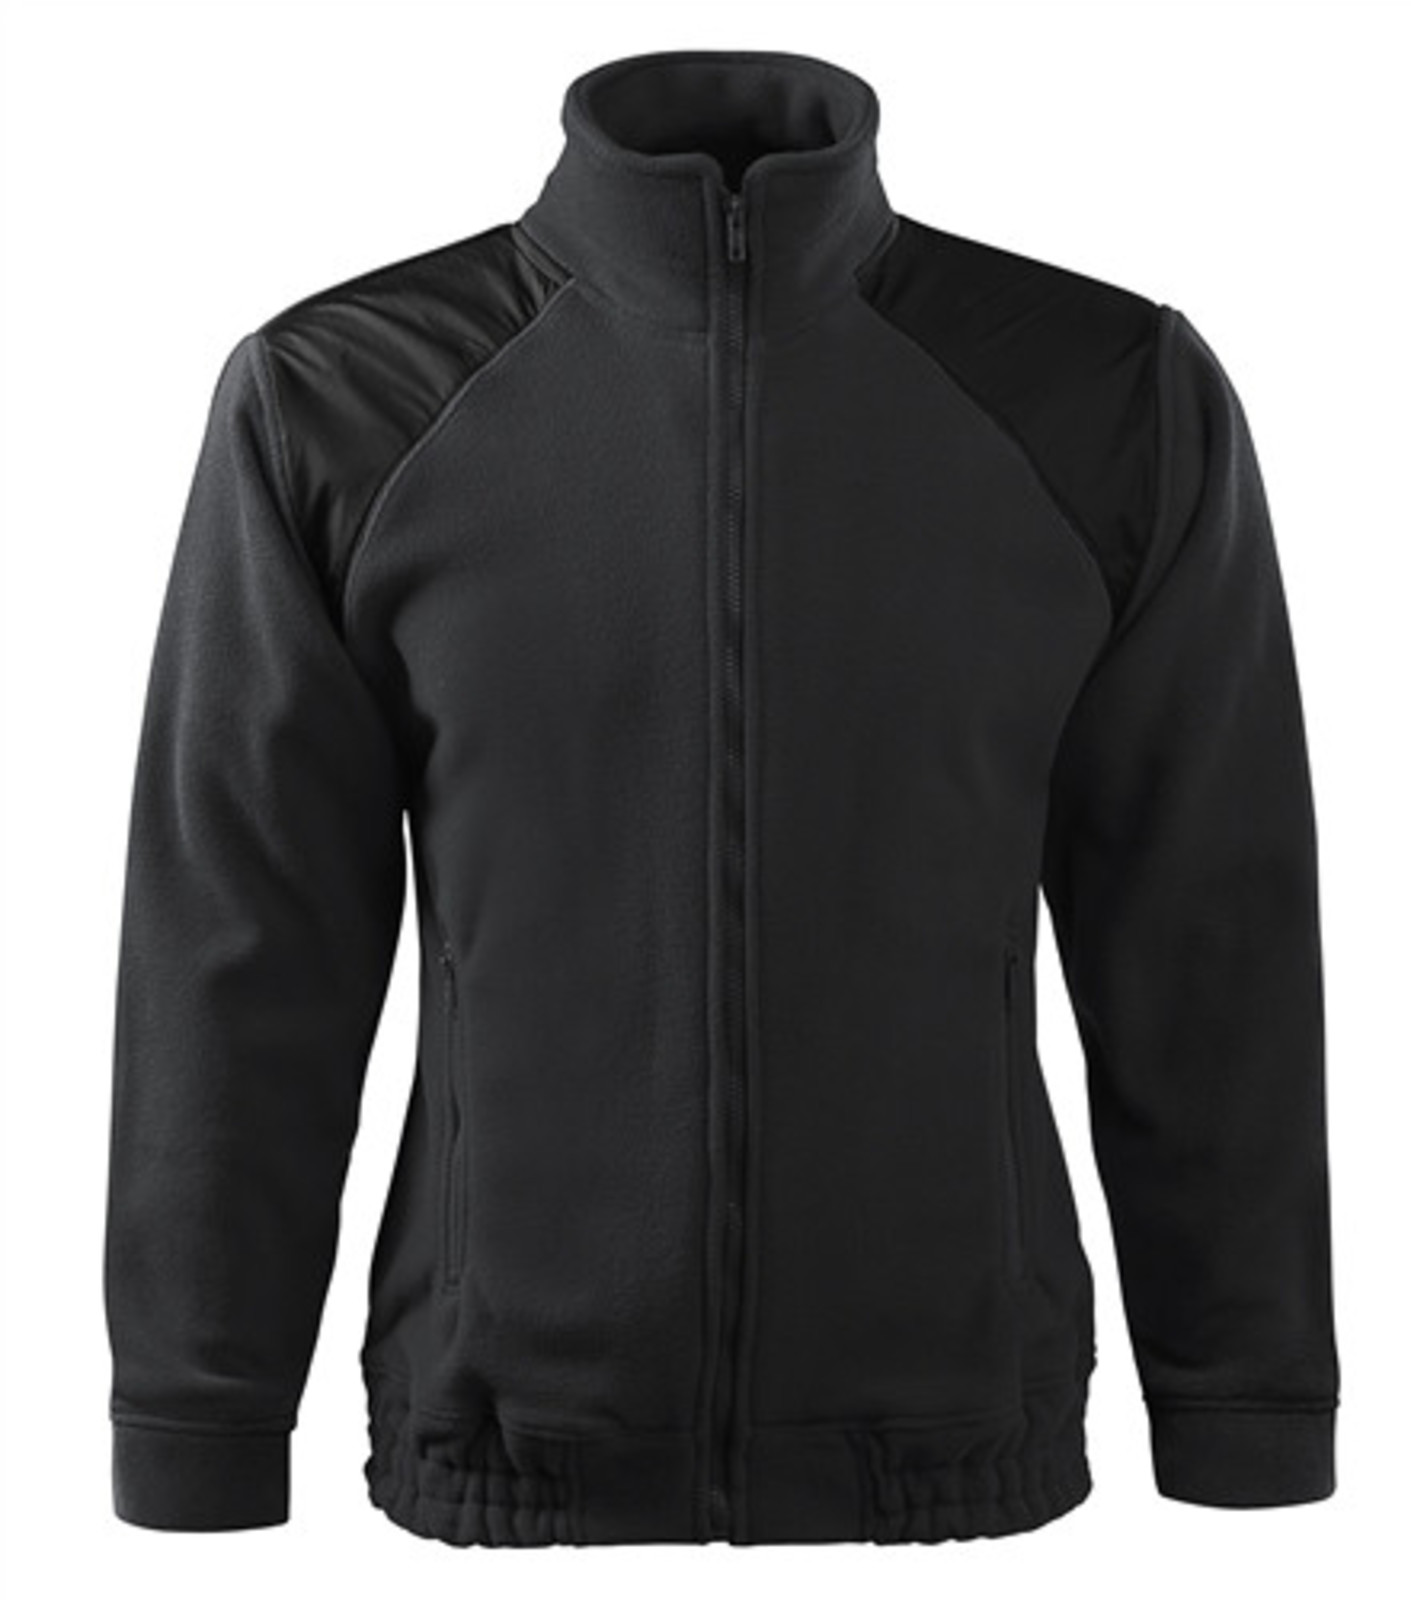 Unisex mikina Rimeck Jacket HI-Q 506 - veľkosť: M, farba: šedá ebony